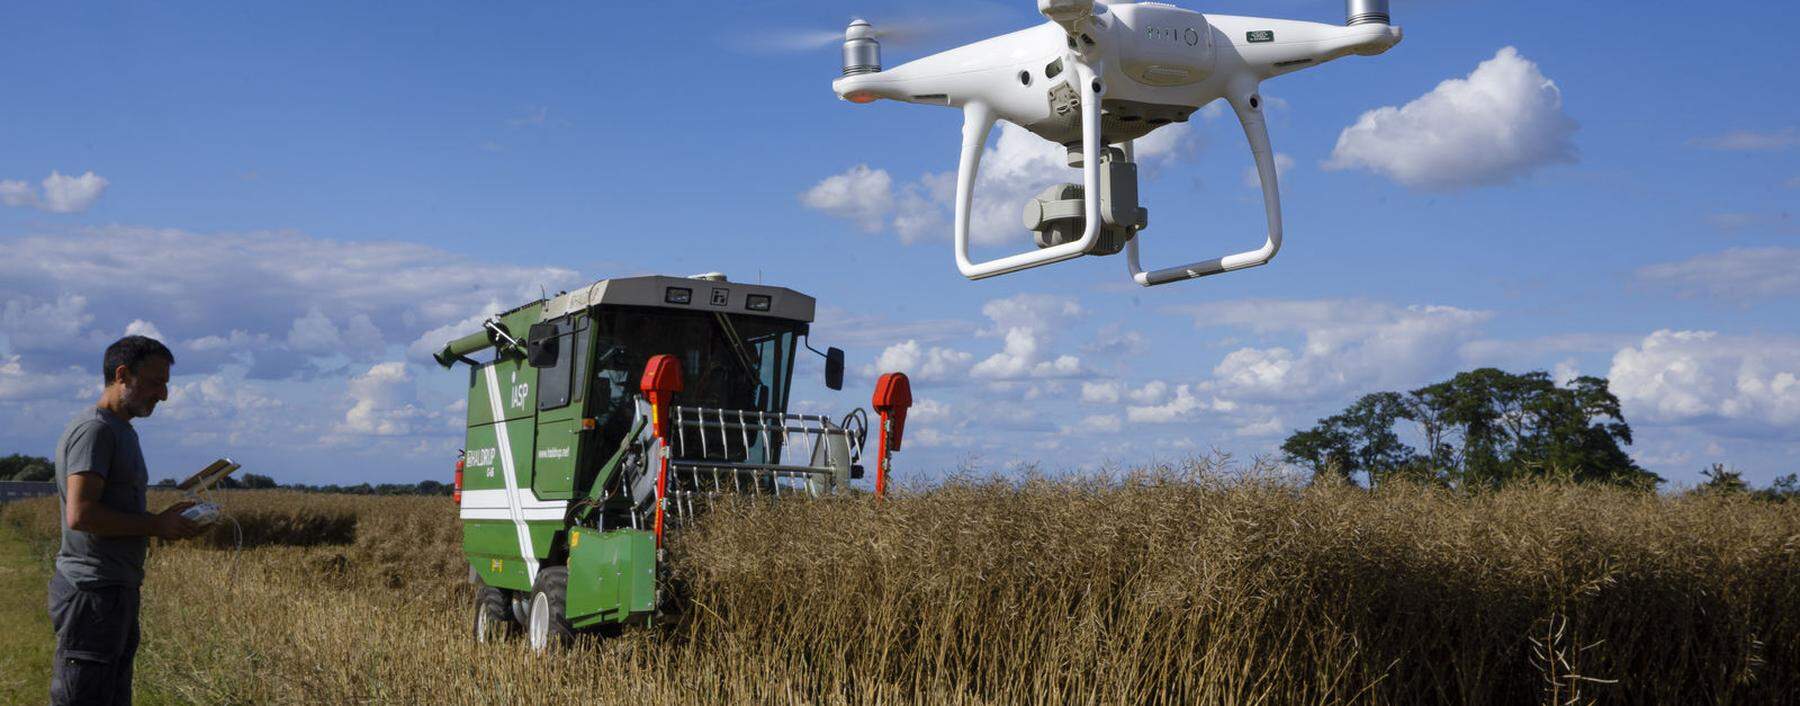 Technologie und Digitalisierung machen auch vor der Landwirtschaft nicht halt: Schädlinge werden mithilfe von Drohnen bekämpft.